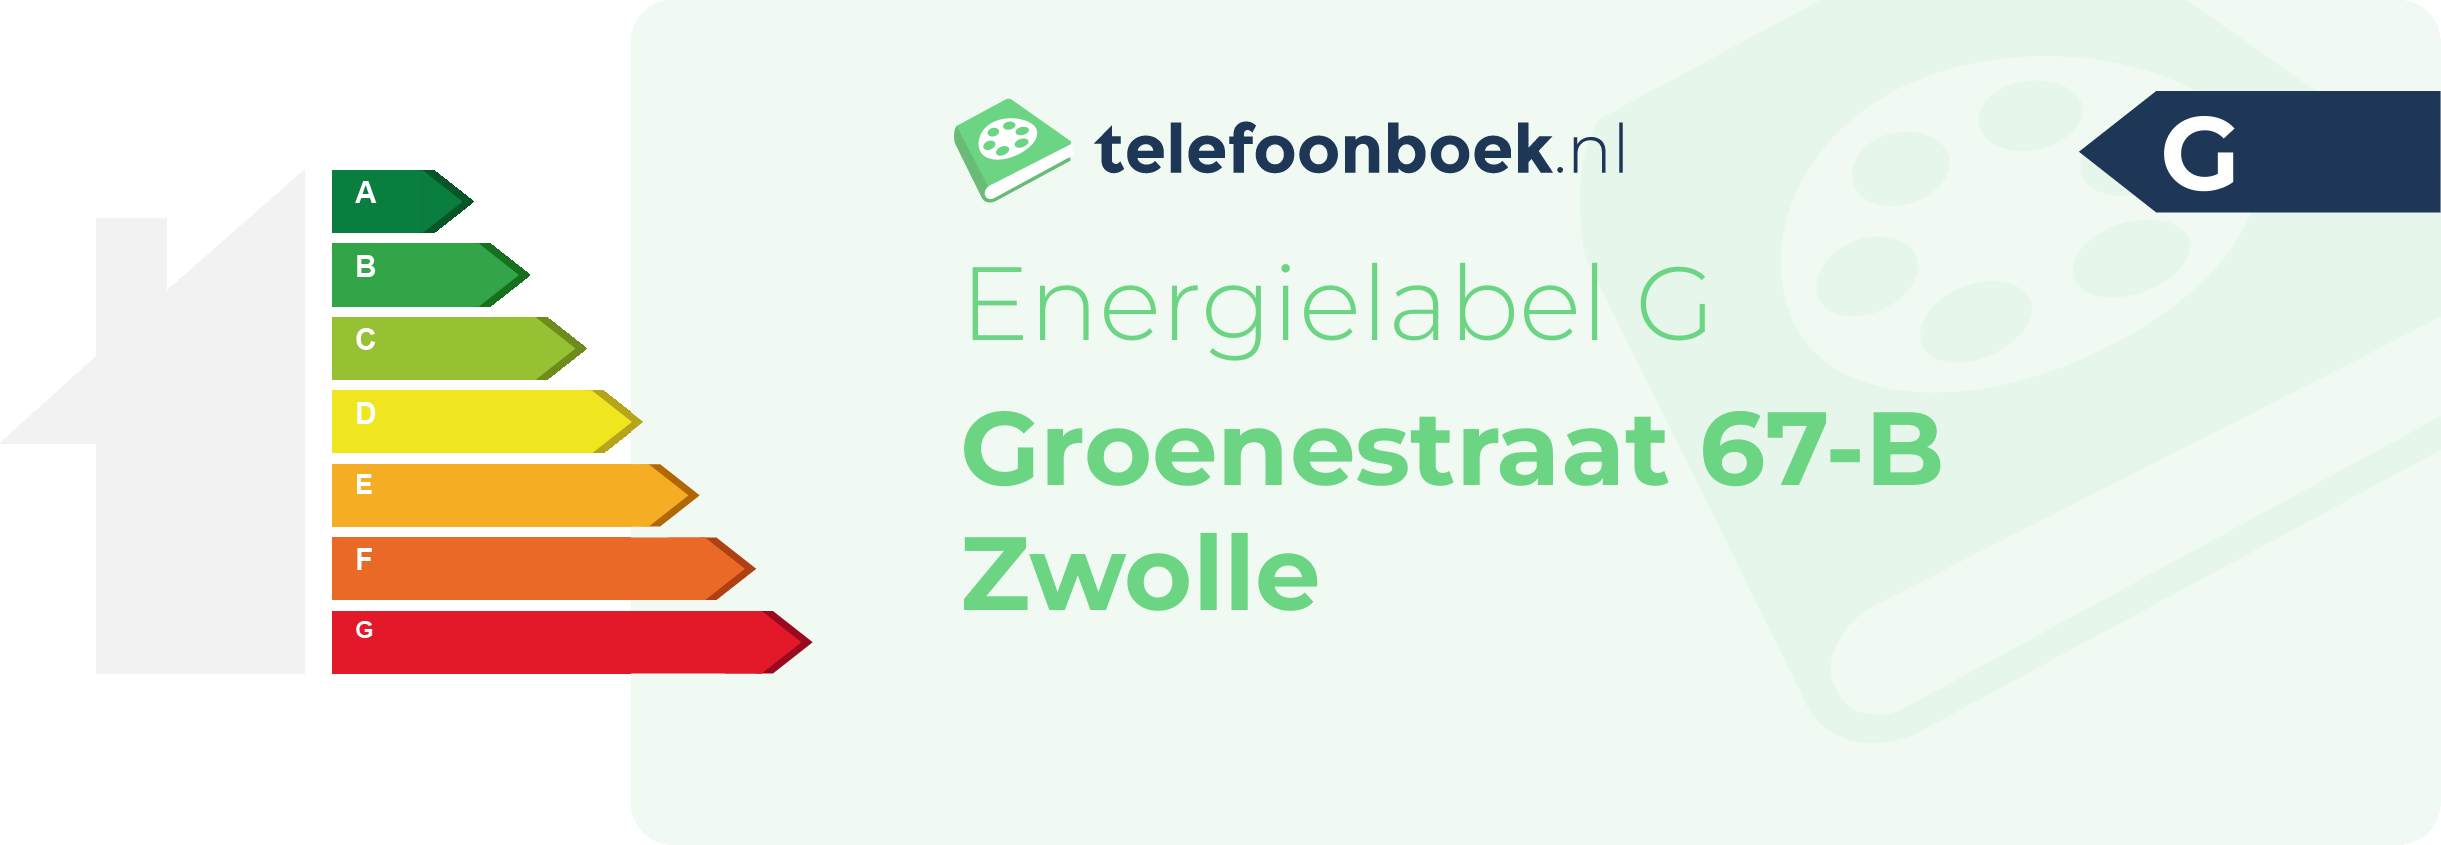 Energielabel Groenestraat 67-B Zwolle